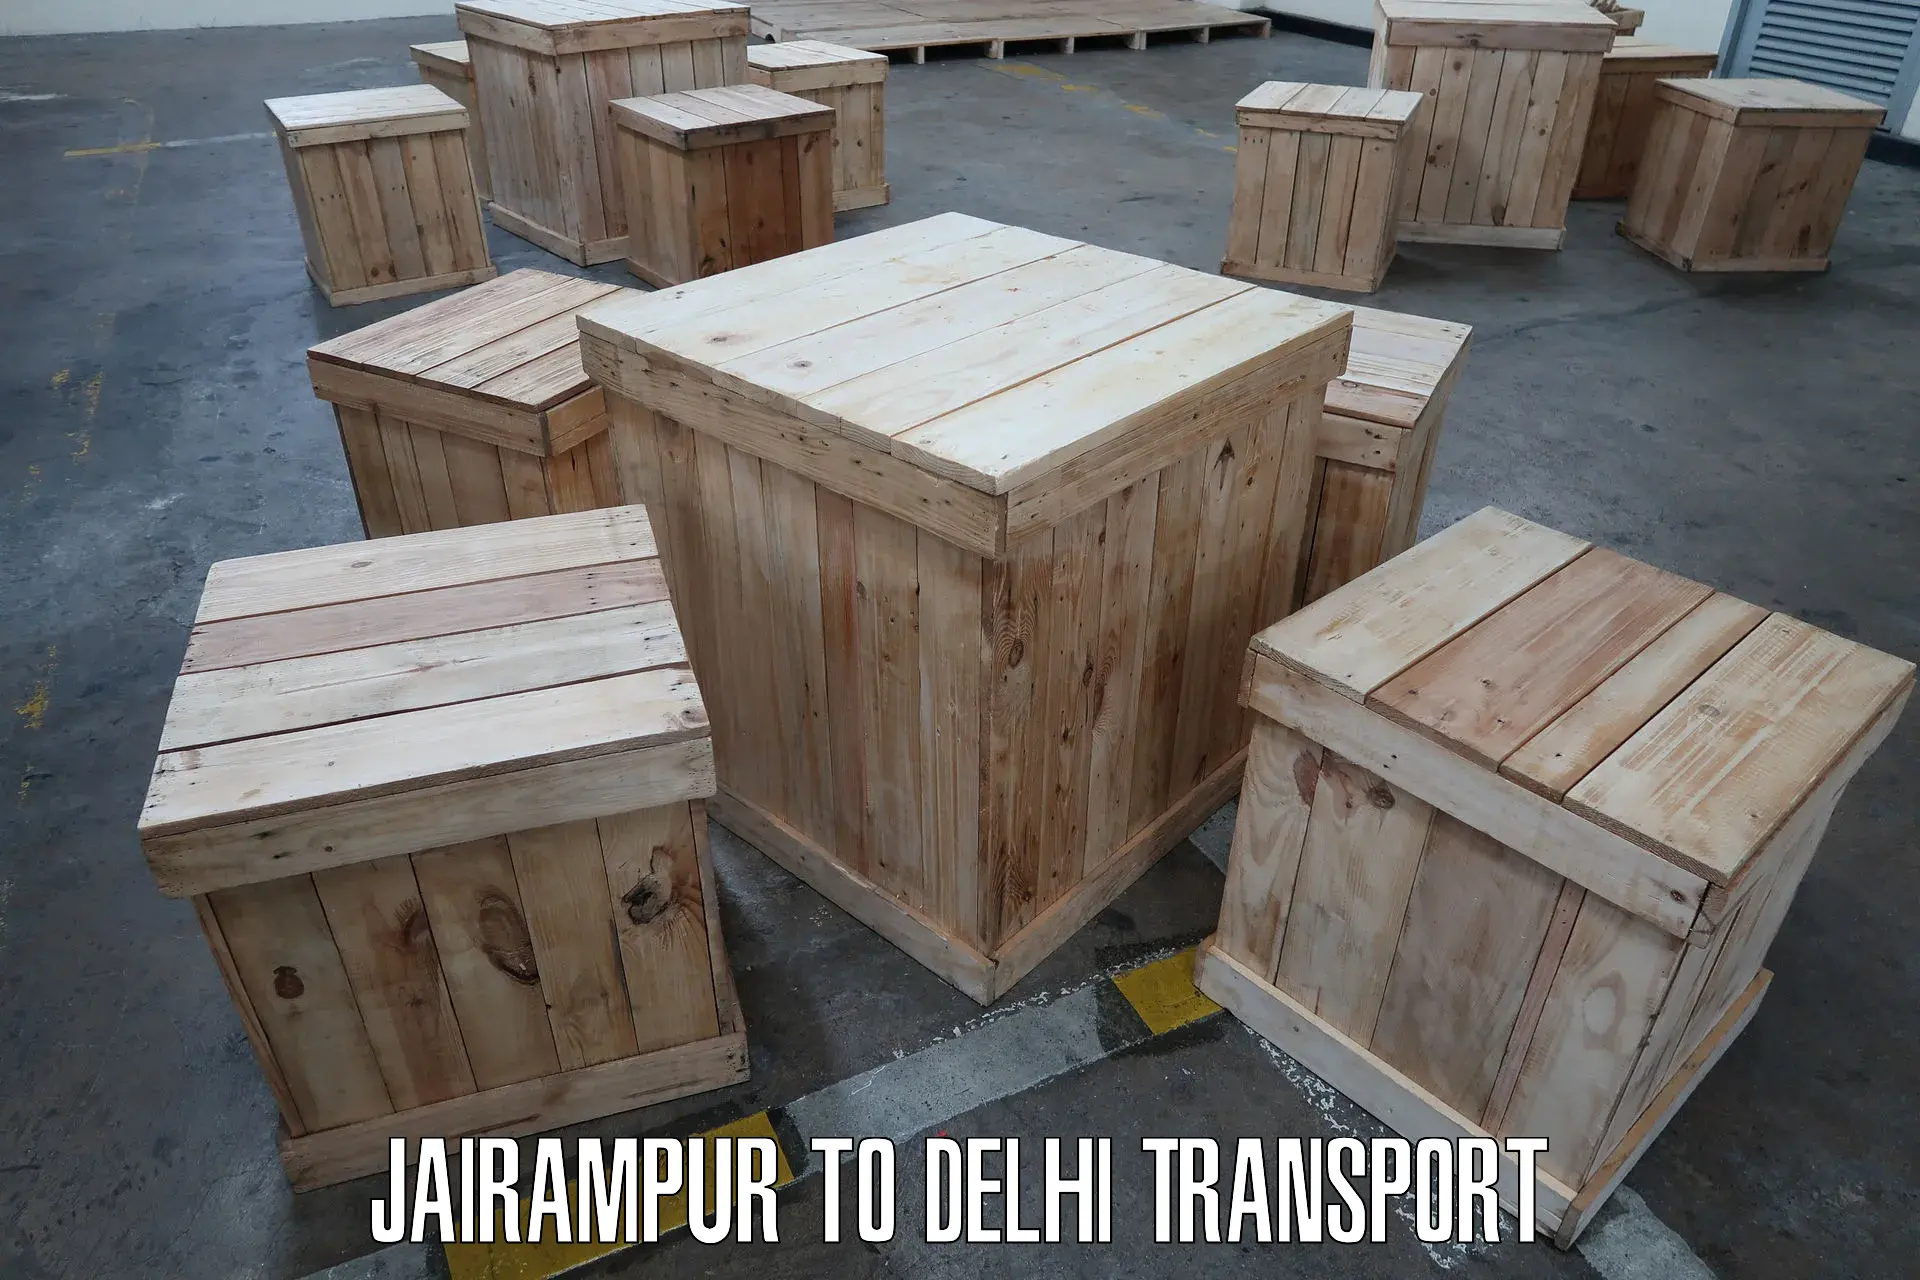 Container transport service Jairampur to Delhi